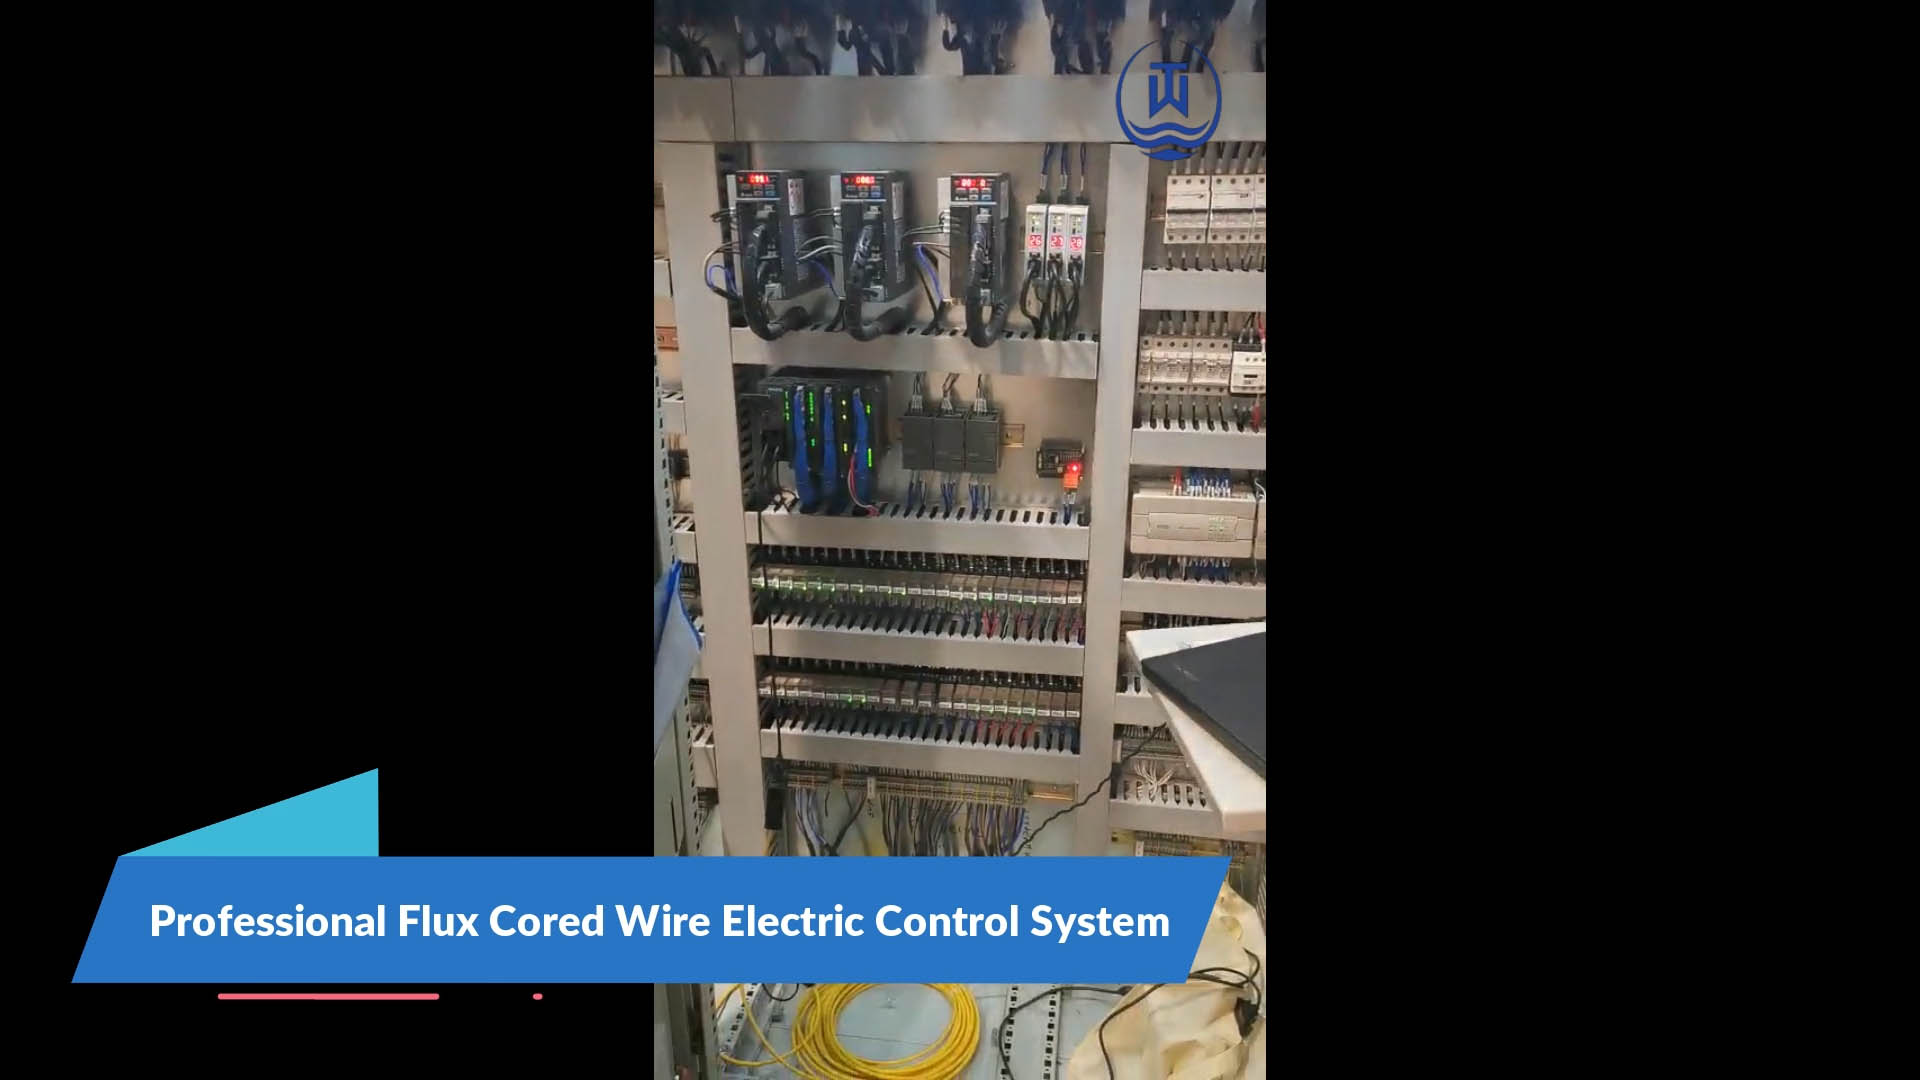 Sistema de controle elétrico de fio fluxado profissional - três águas